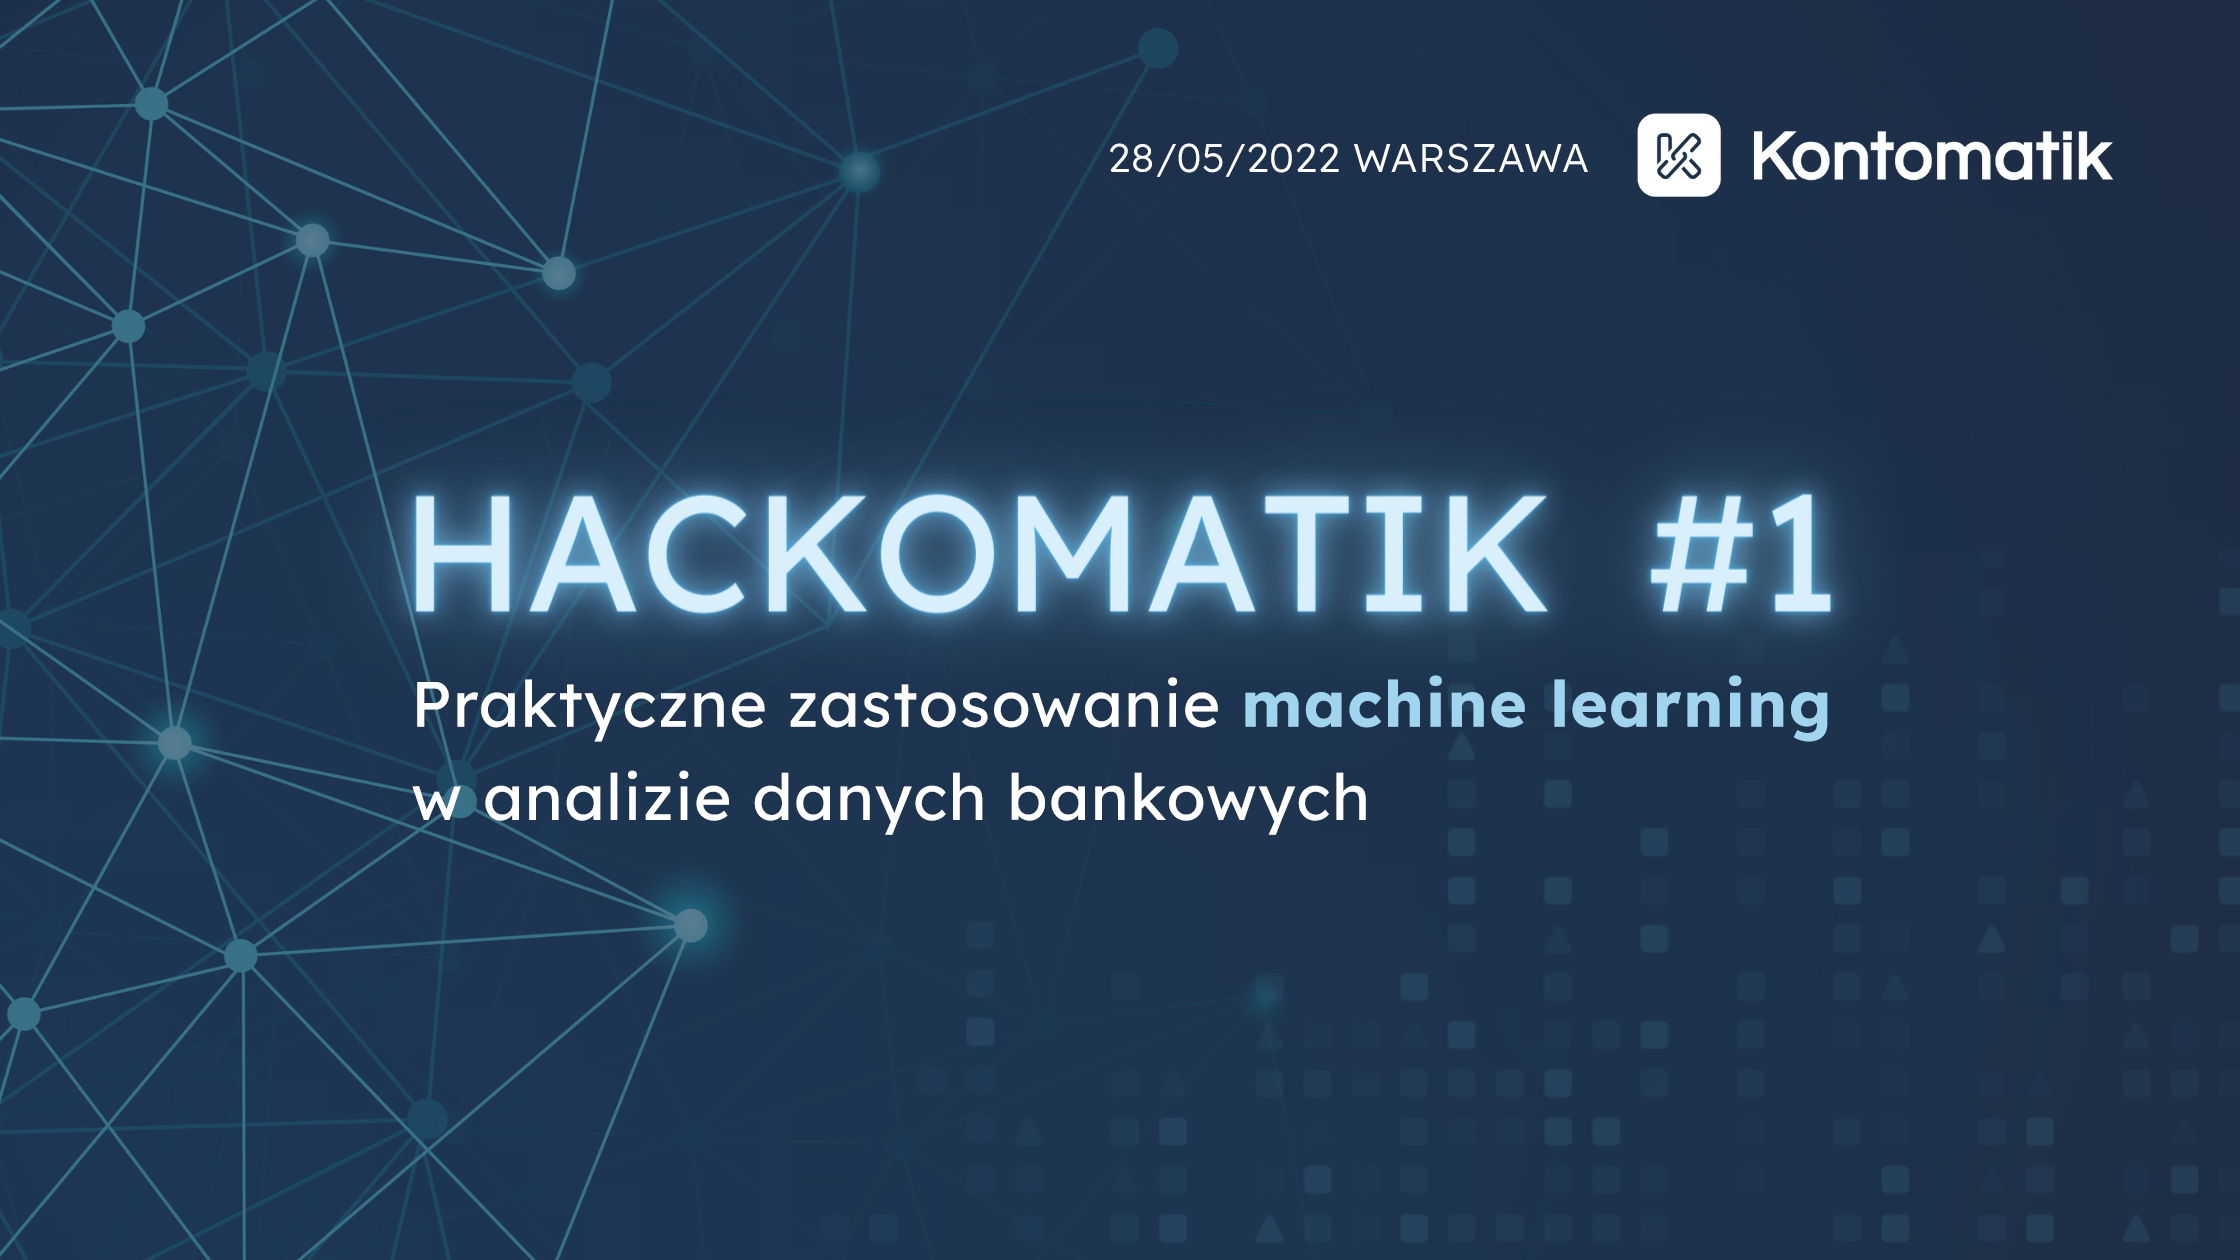 Kontomatik organizuje pierwszy ‘Hackomatik’ dla programistów